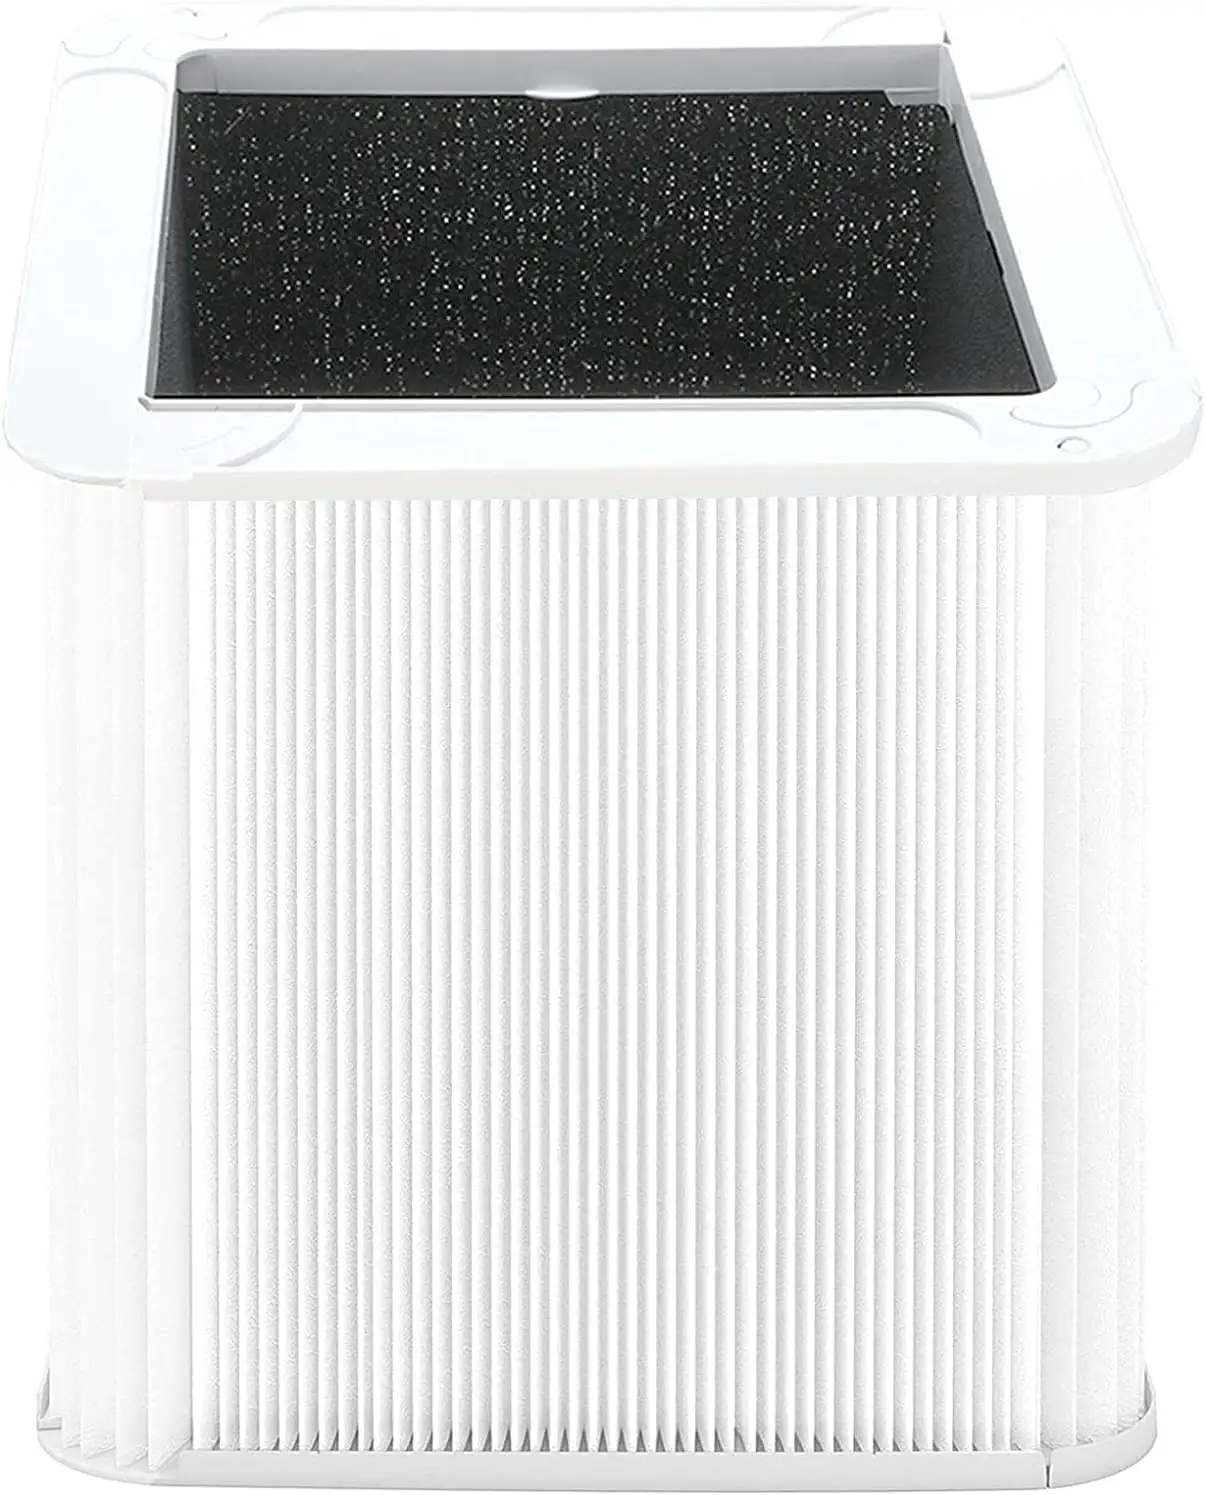 Mavi saf 211 + hava temizleyici filtre parça değiştirme filtresi uyumluluk hava temizleyici